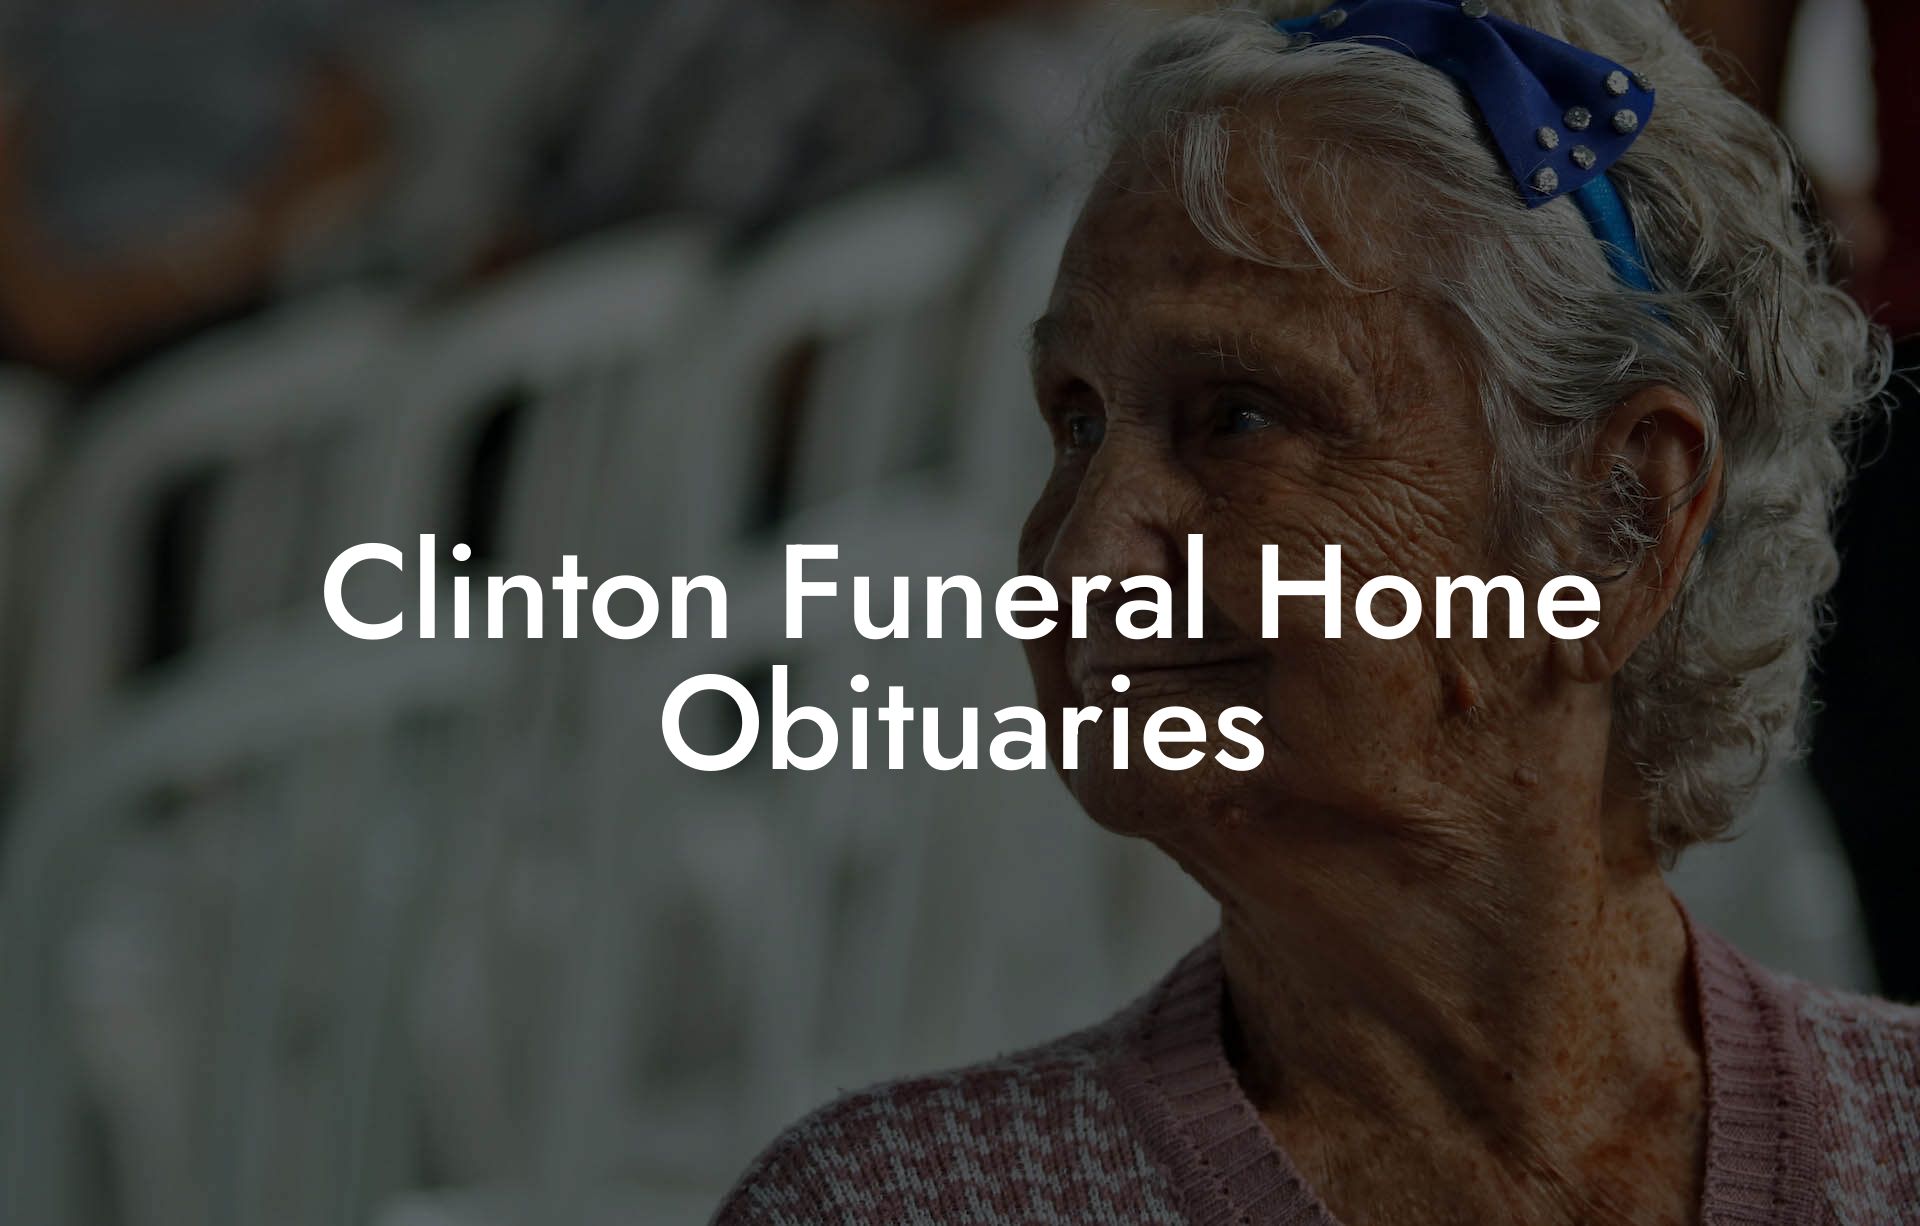 Clinton Funeral Home Obituaries